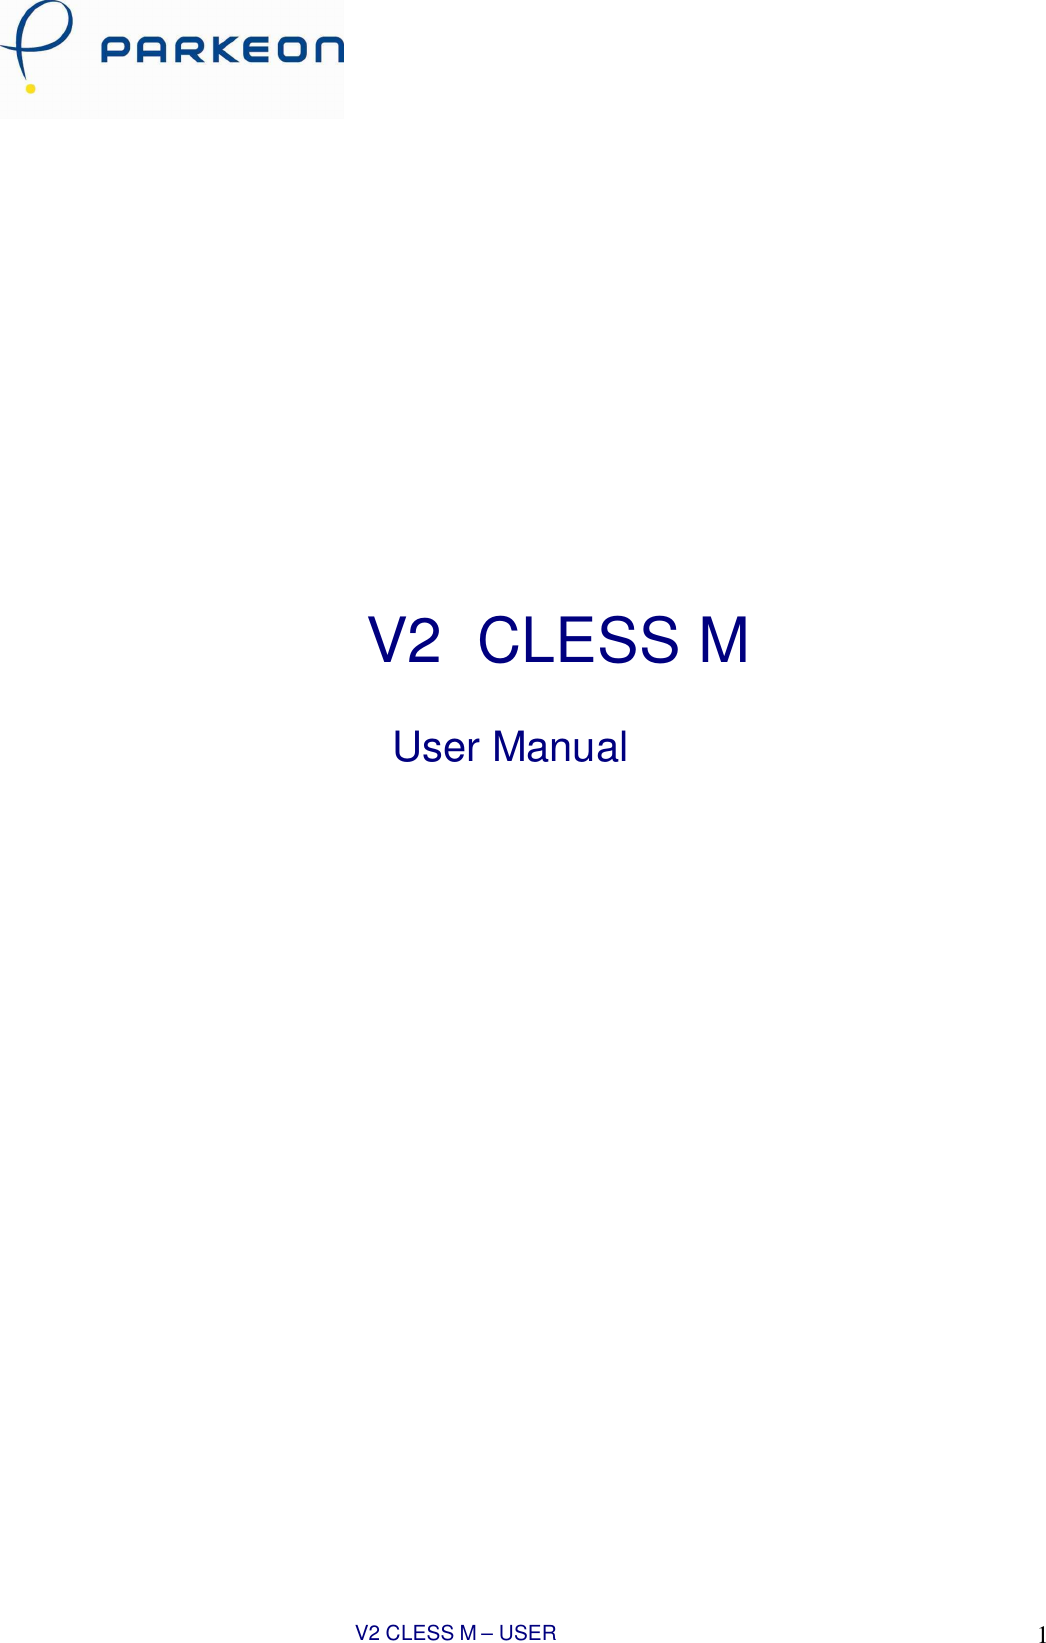 V2 CLESS M – USER MANUAL 1                           V2 CLESS M   User Manual